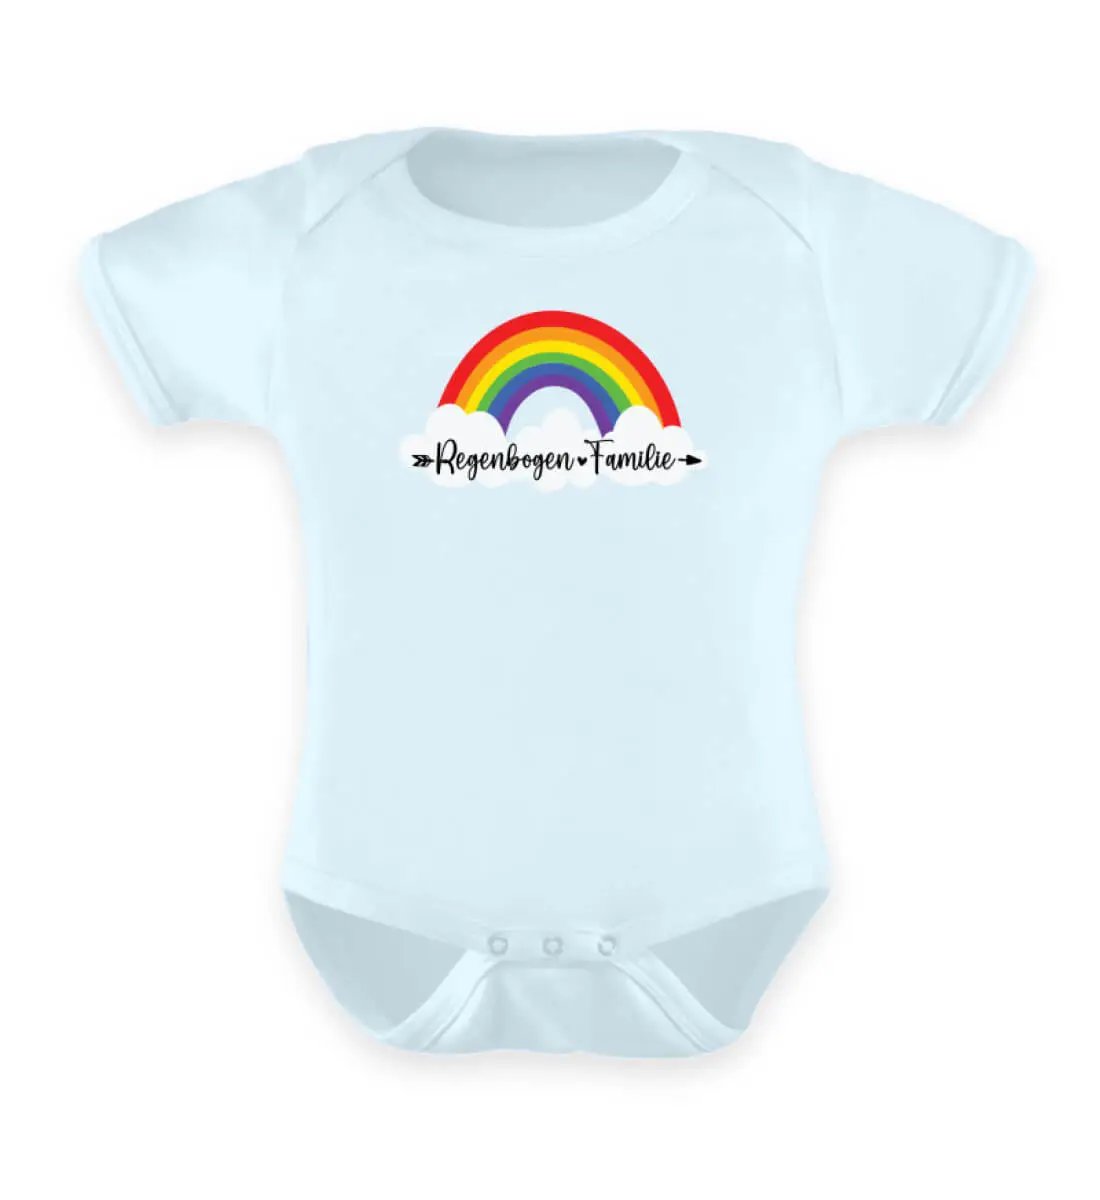 Dieses Bild zeigt einen hellblauen Baby Body mit einem Regenbogen-Motiv wo drauf steht Regenbogen-Familie